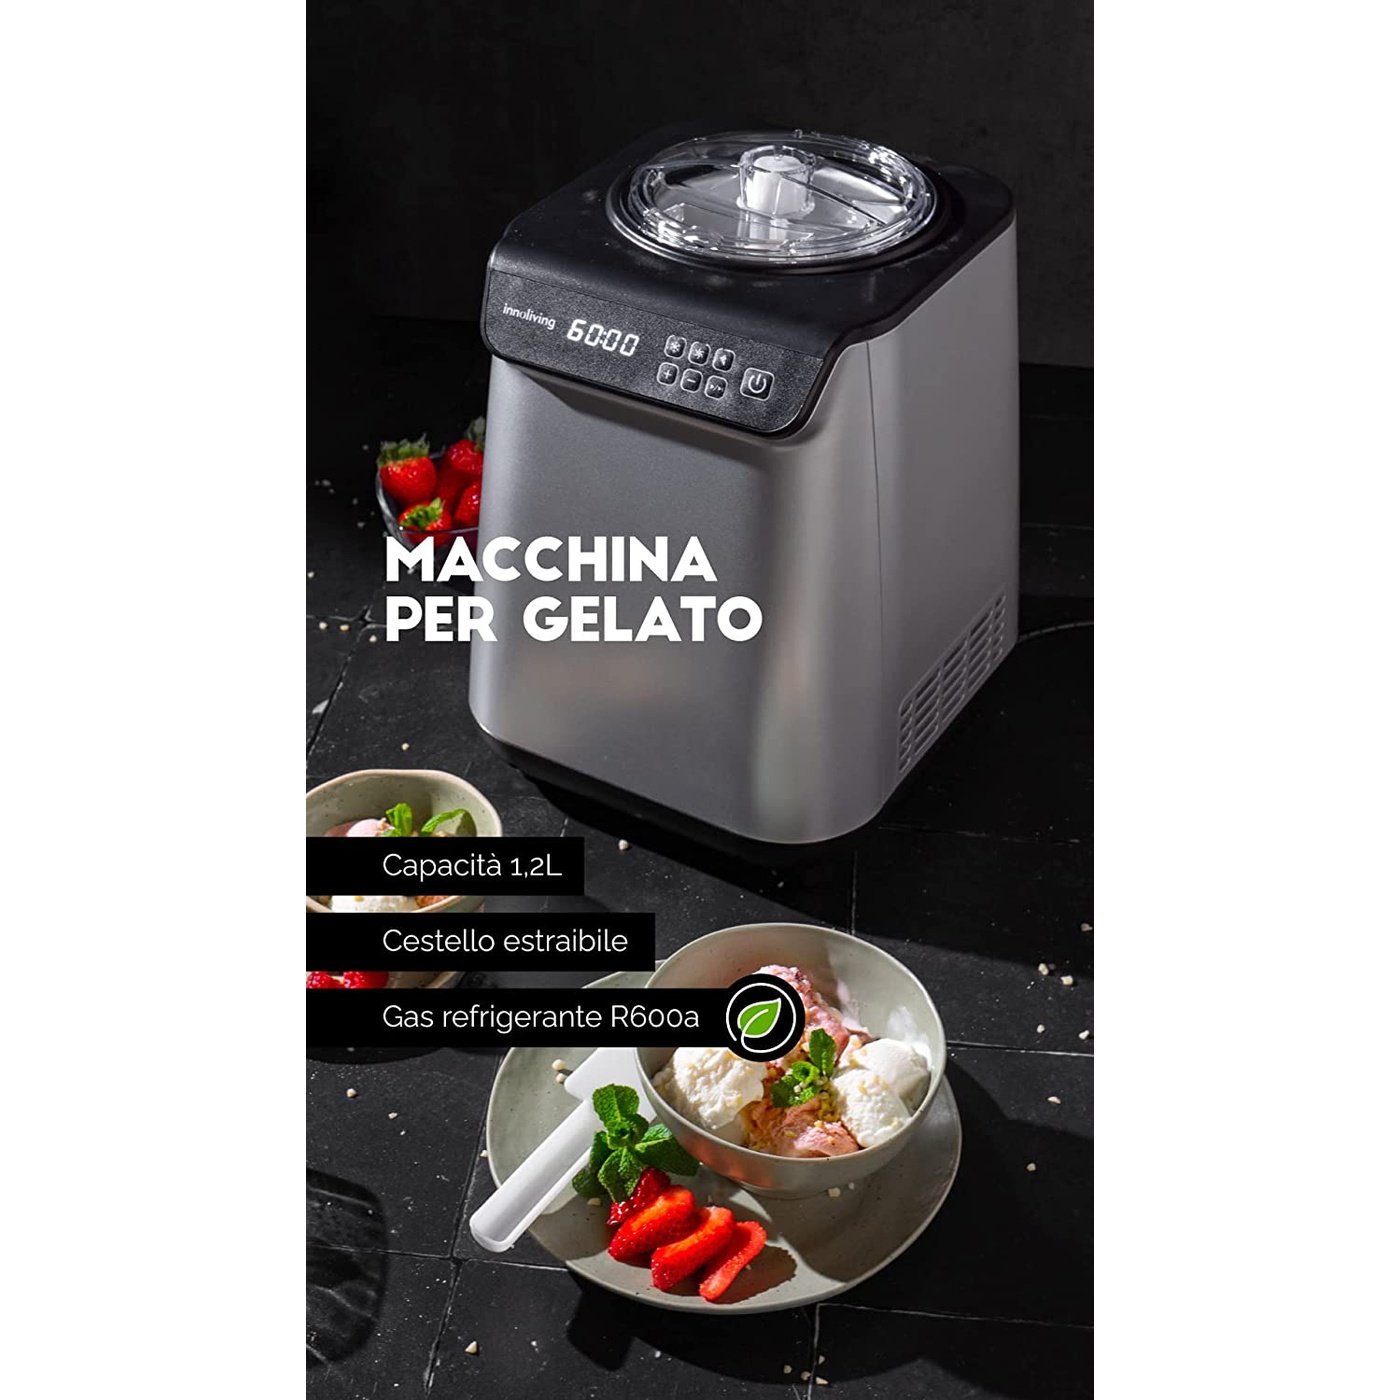 Macchina per gelato con compressore cestello estraibile, Innoliving INN-850